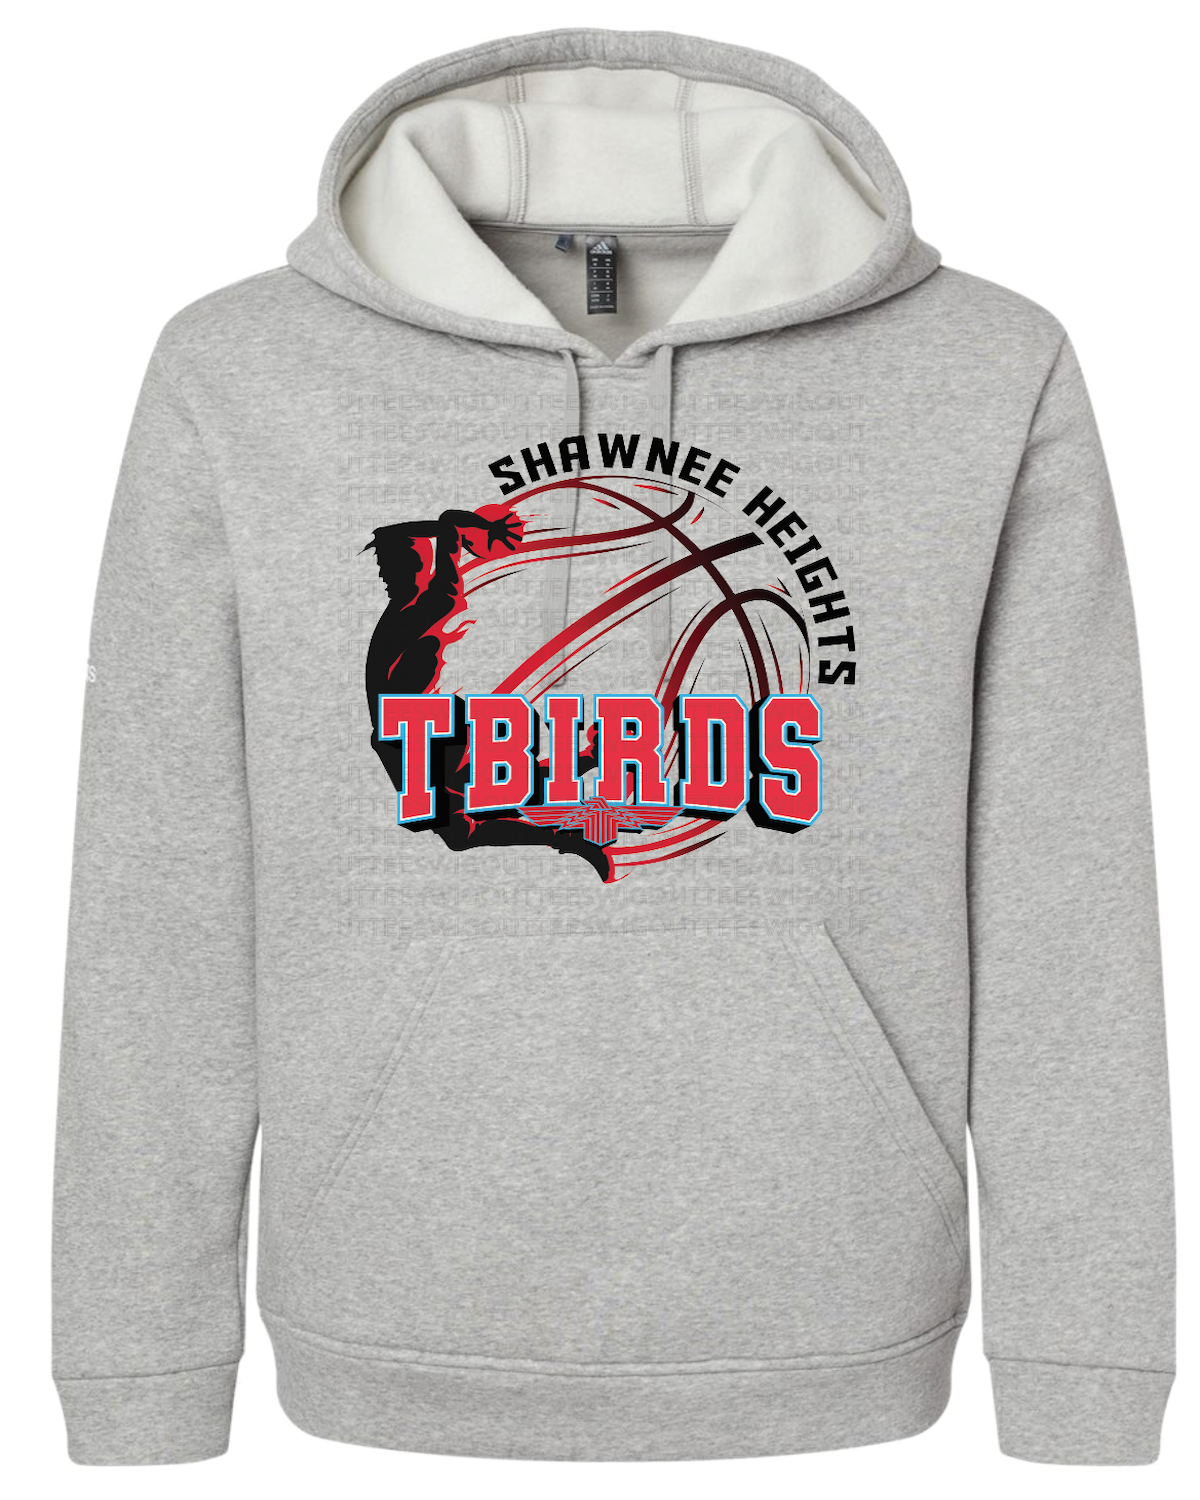 SHHS Tbirds Basketball Adidas Fleece Hooded Sweatshirt